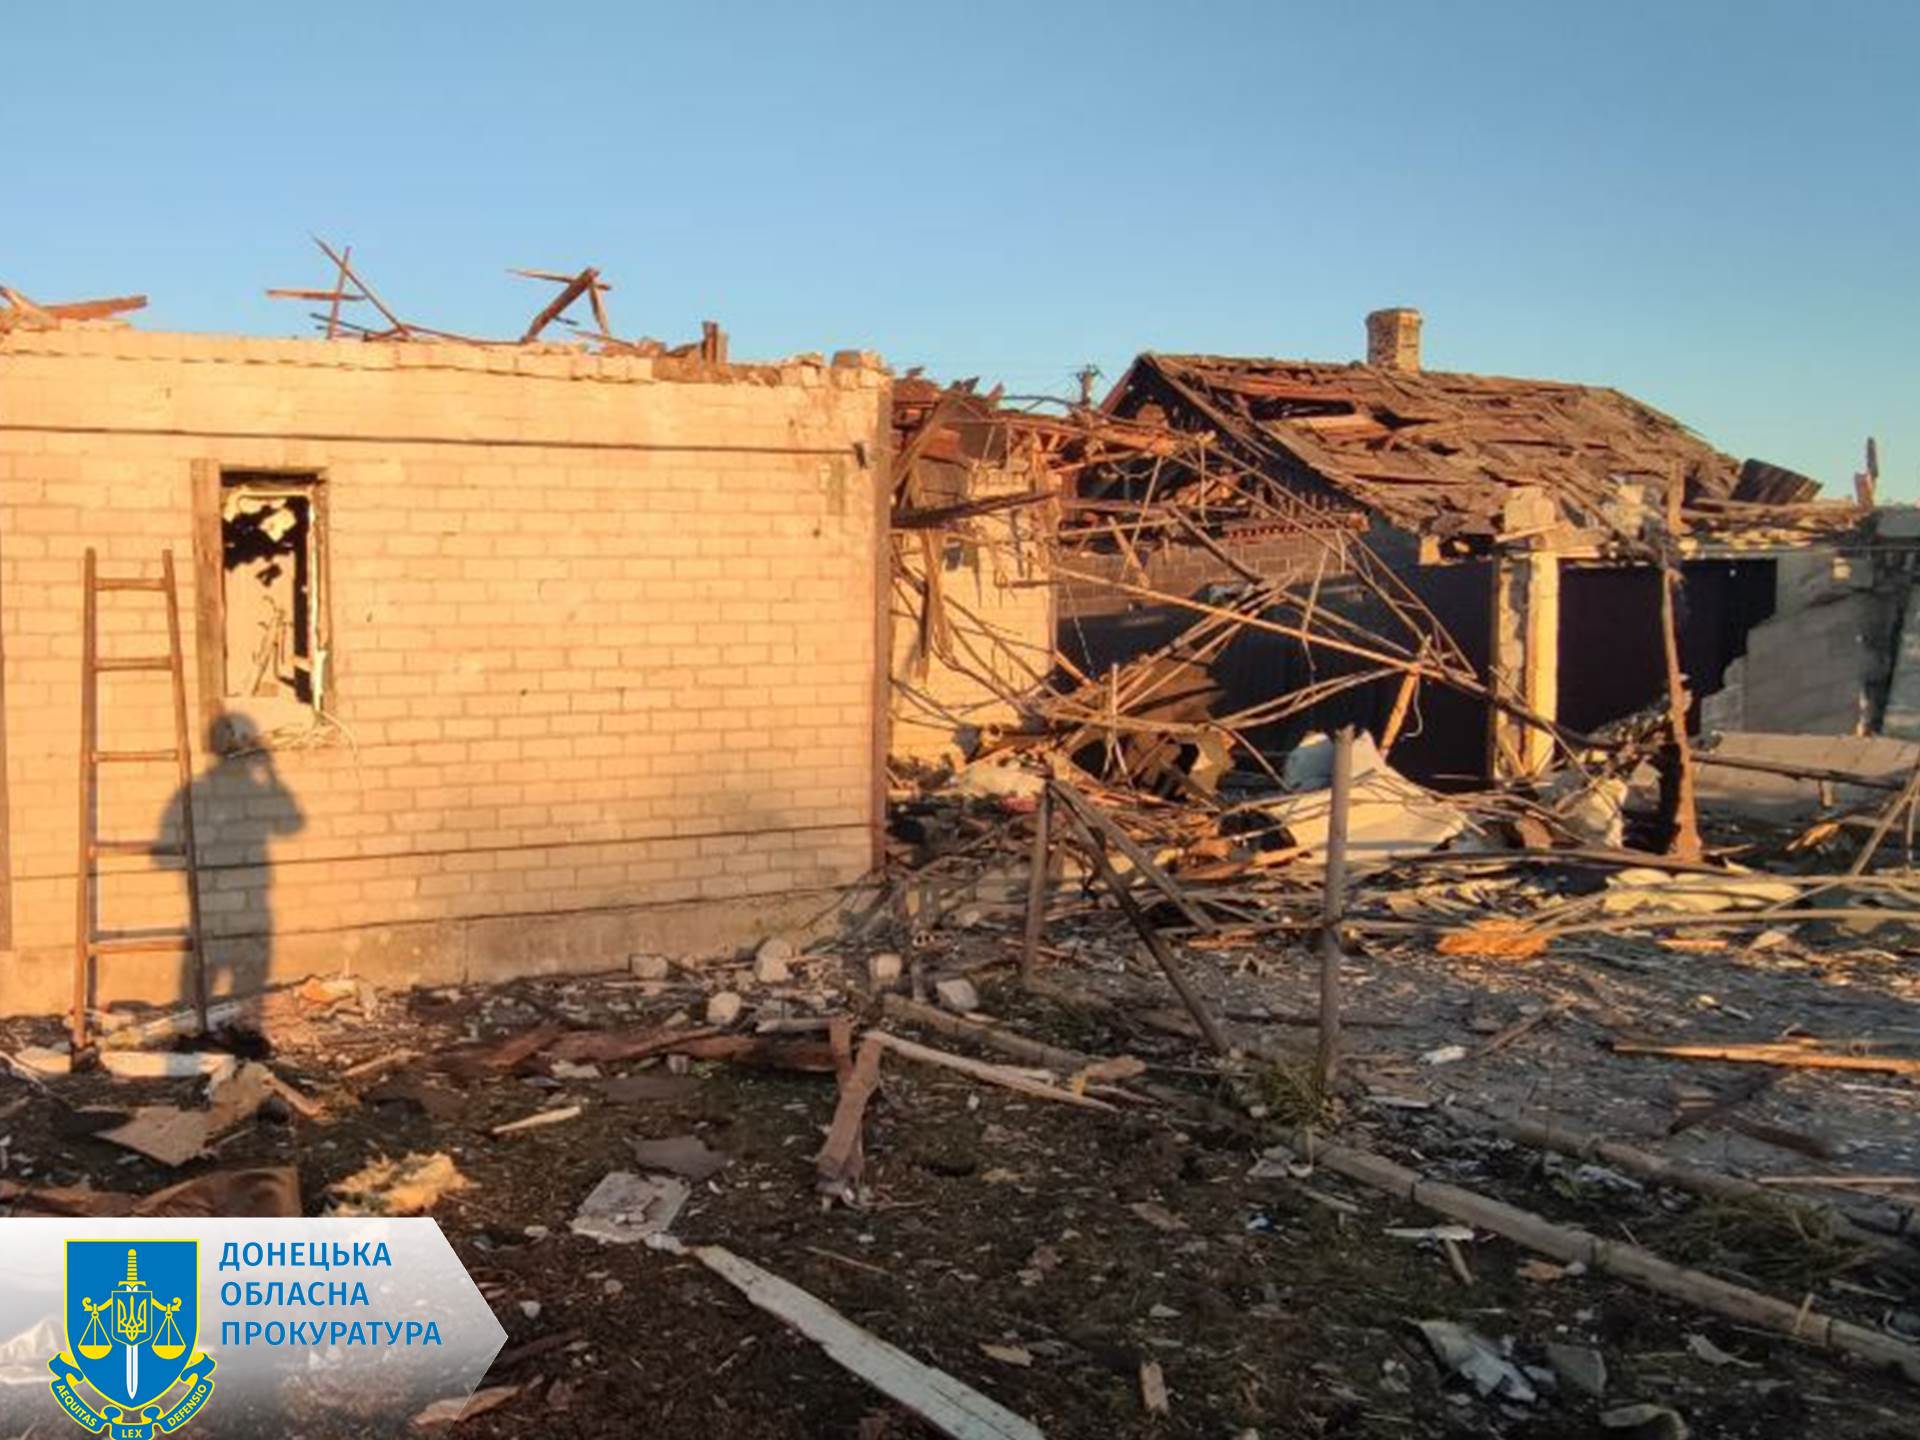 Россия накрыла огнем Донецкую область, в том числе Авдеевку. Убила ребенка и женщину: фото